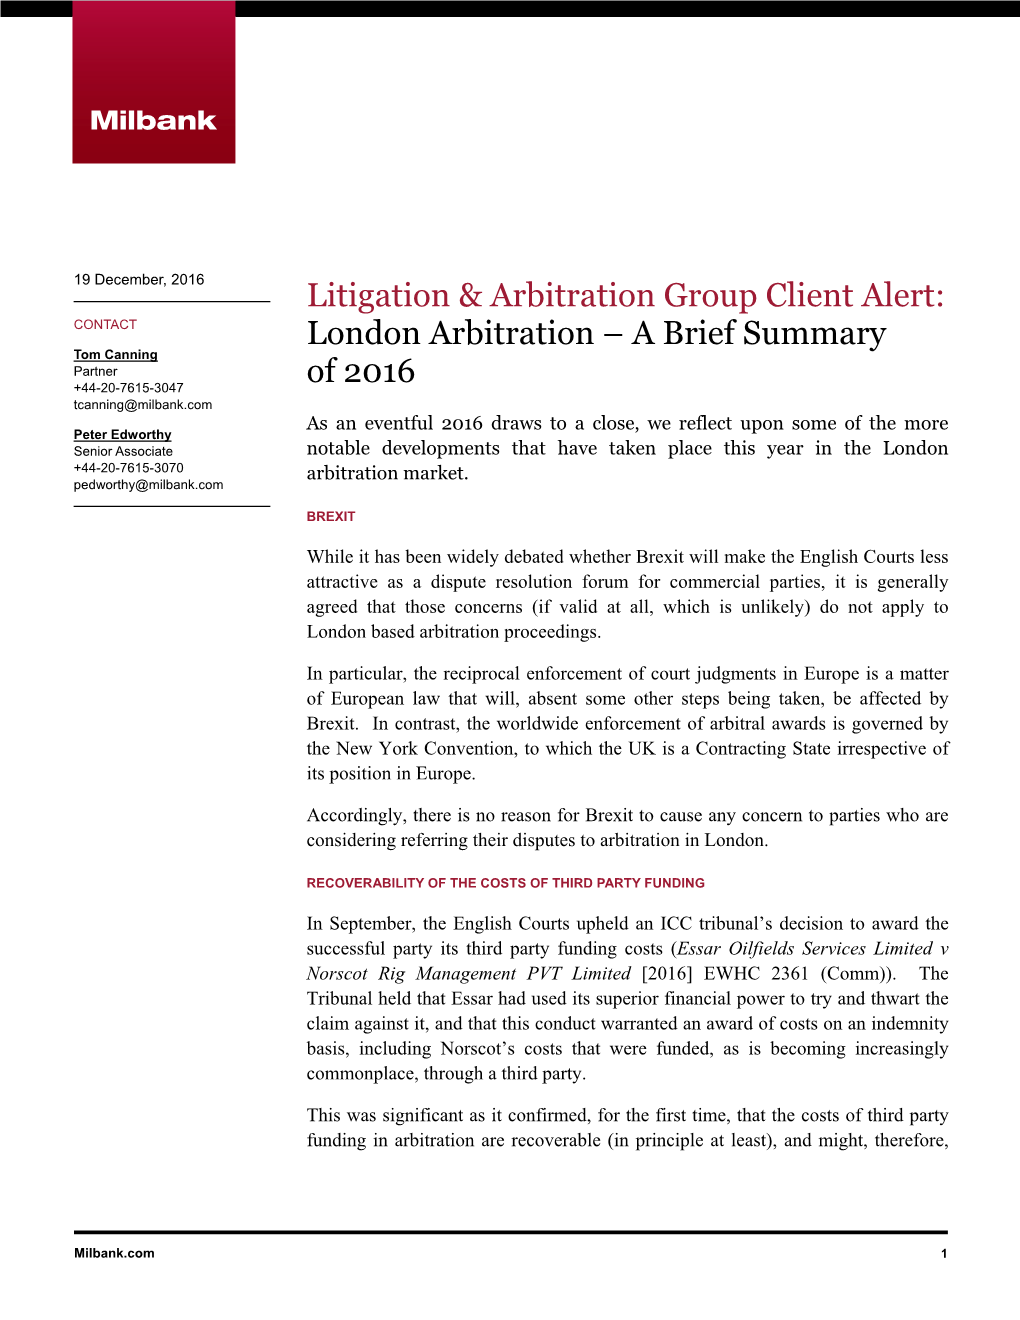 Litigation & Arbitration Group Client Alert: London Arbitration